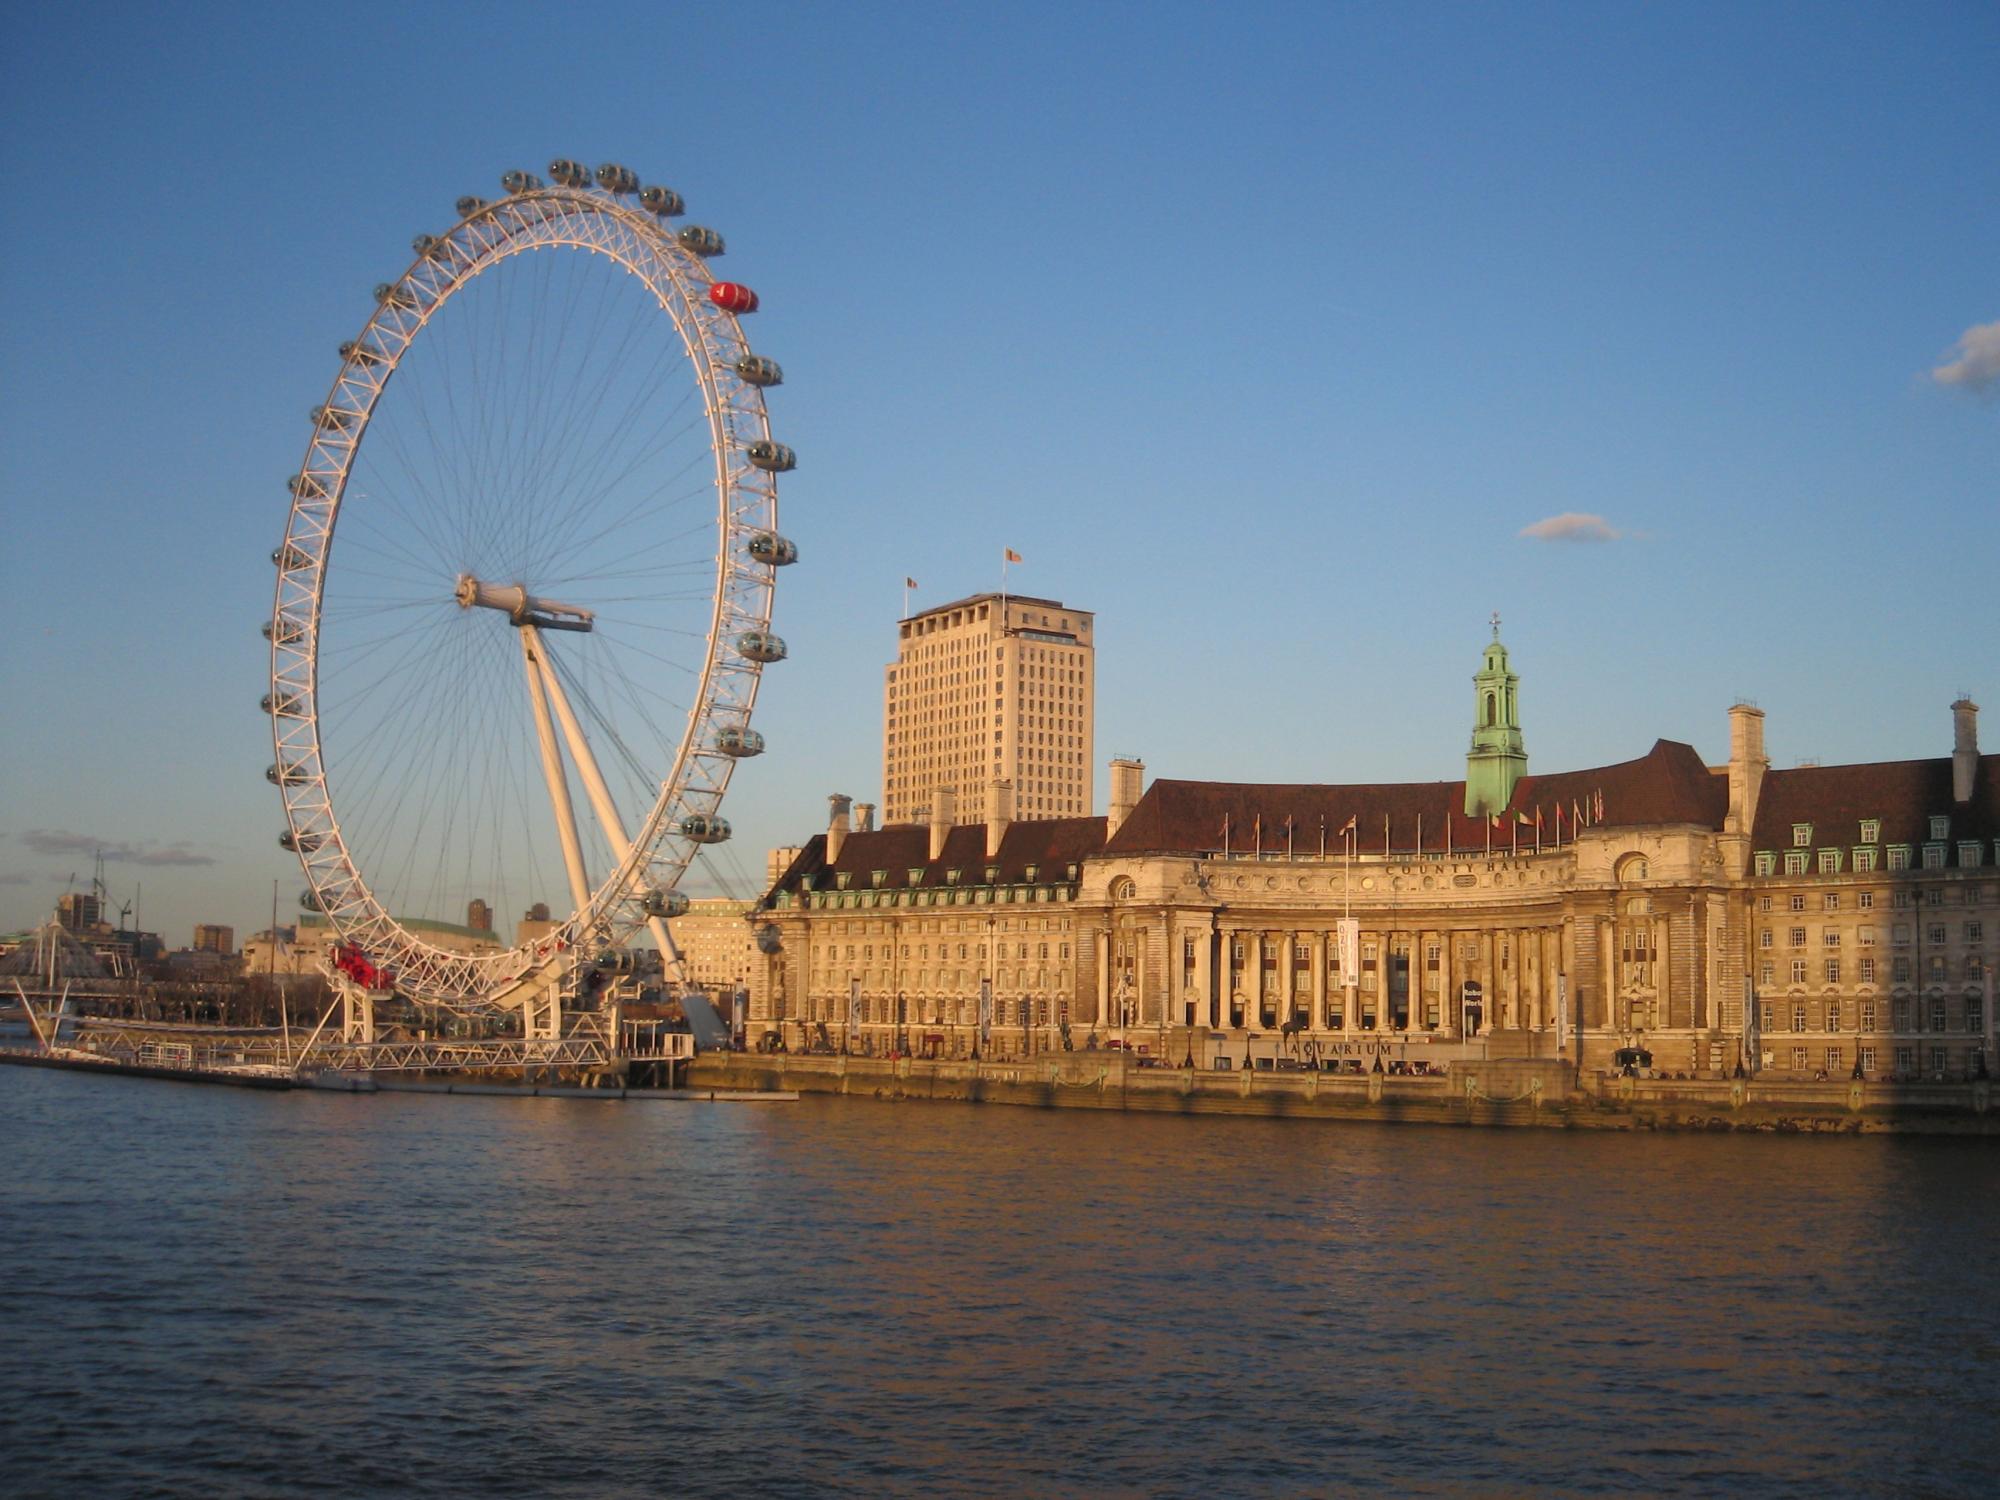 United Kingdom - London Eye